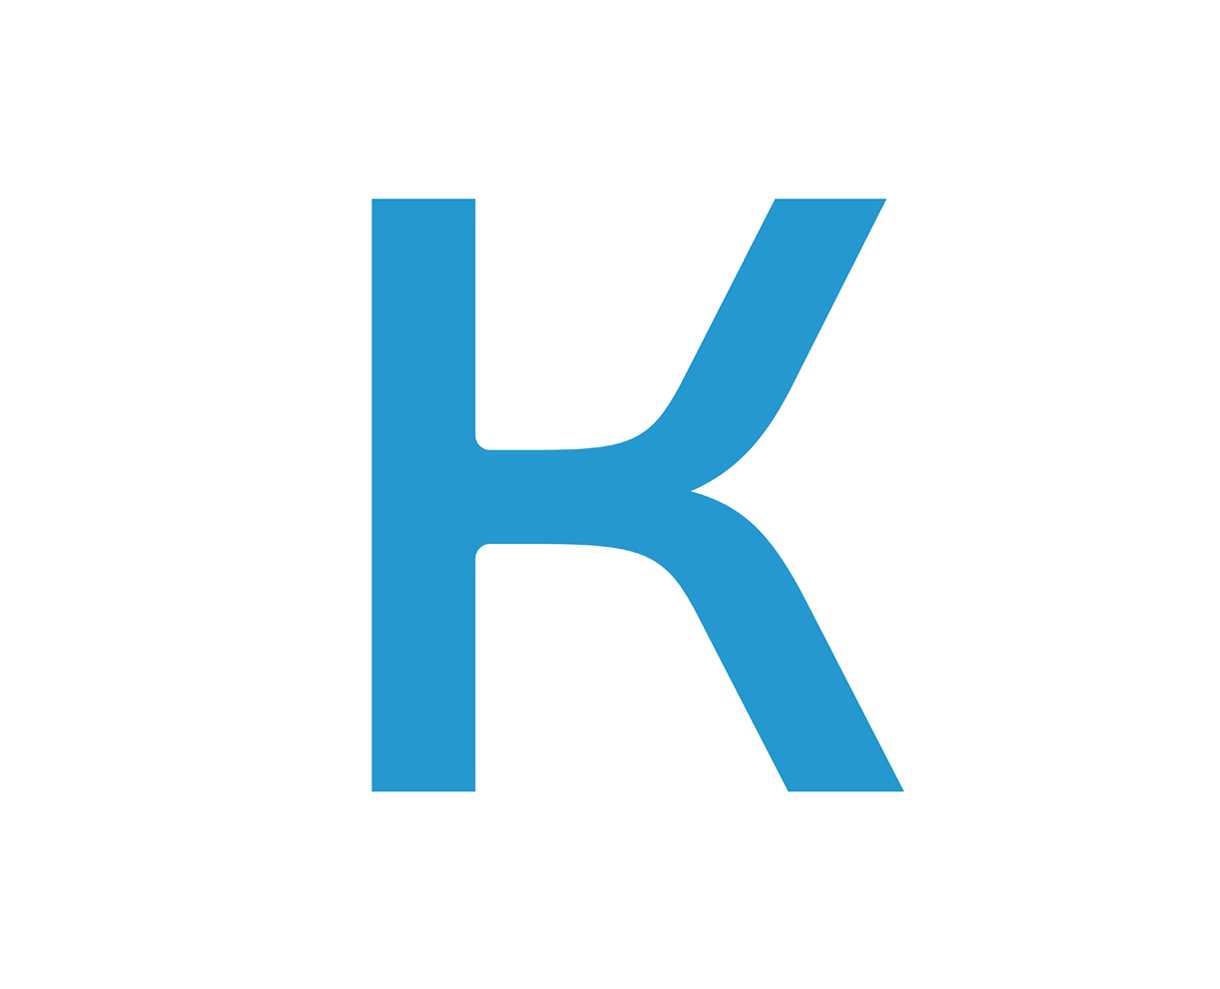 Kerr Circle K logo